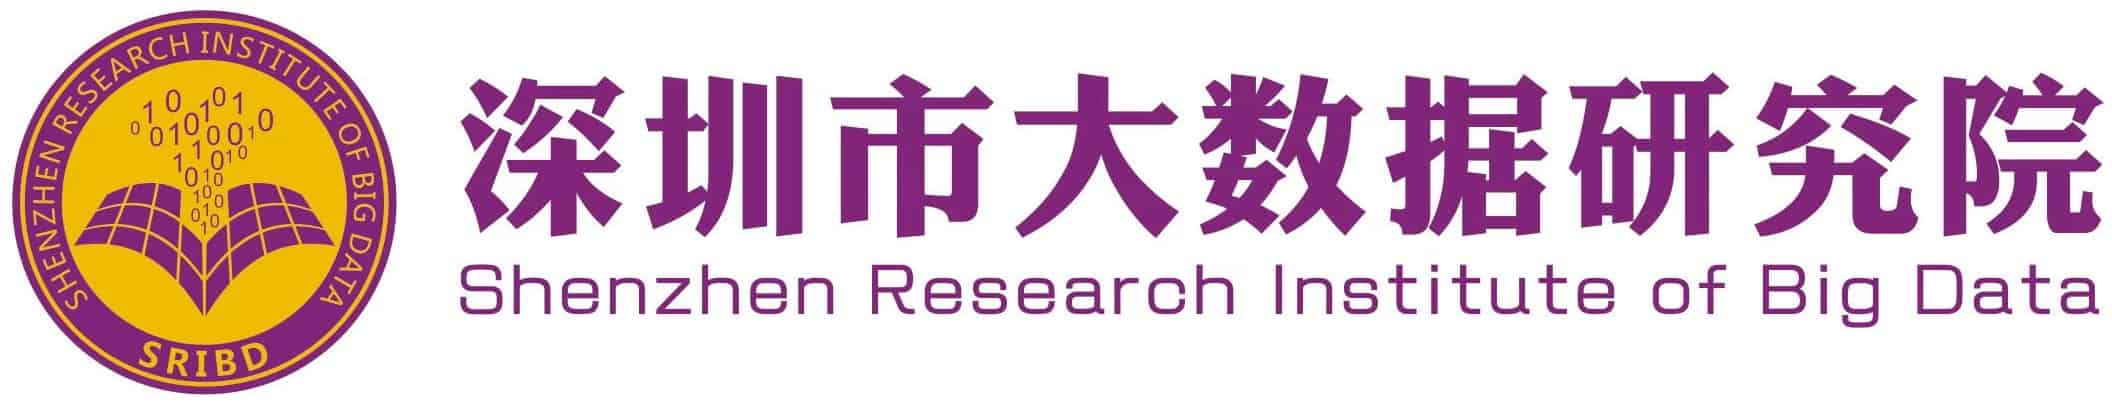 Shenzhen Research Institute of Big Data